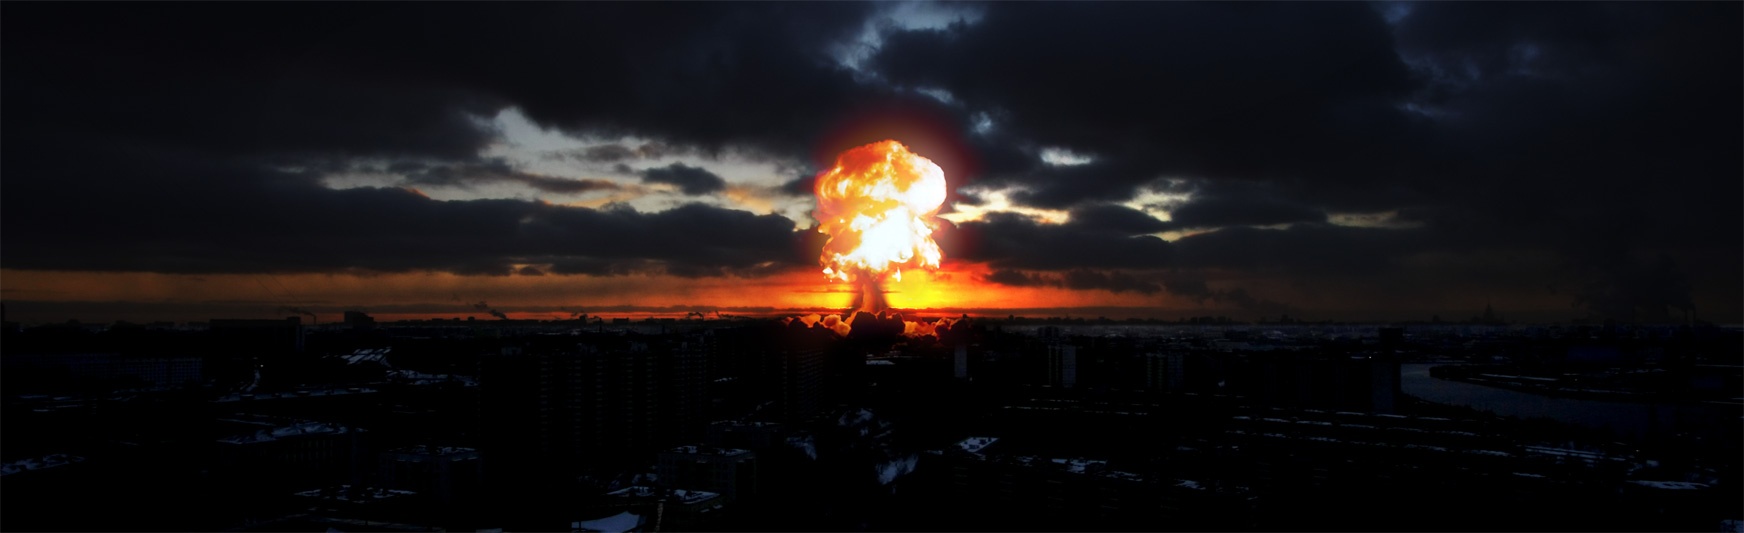 Explosion by Andrew Kuznetsov